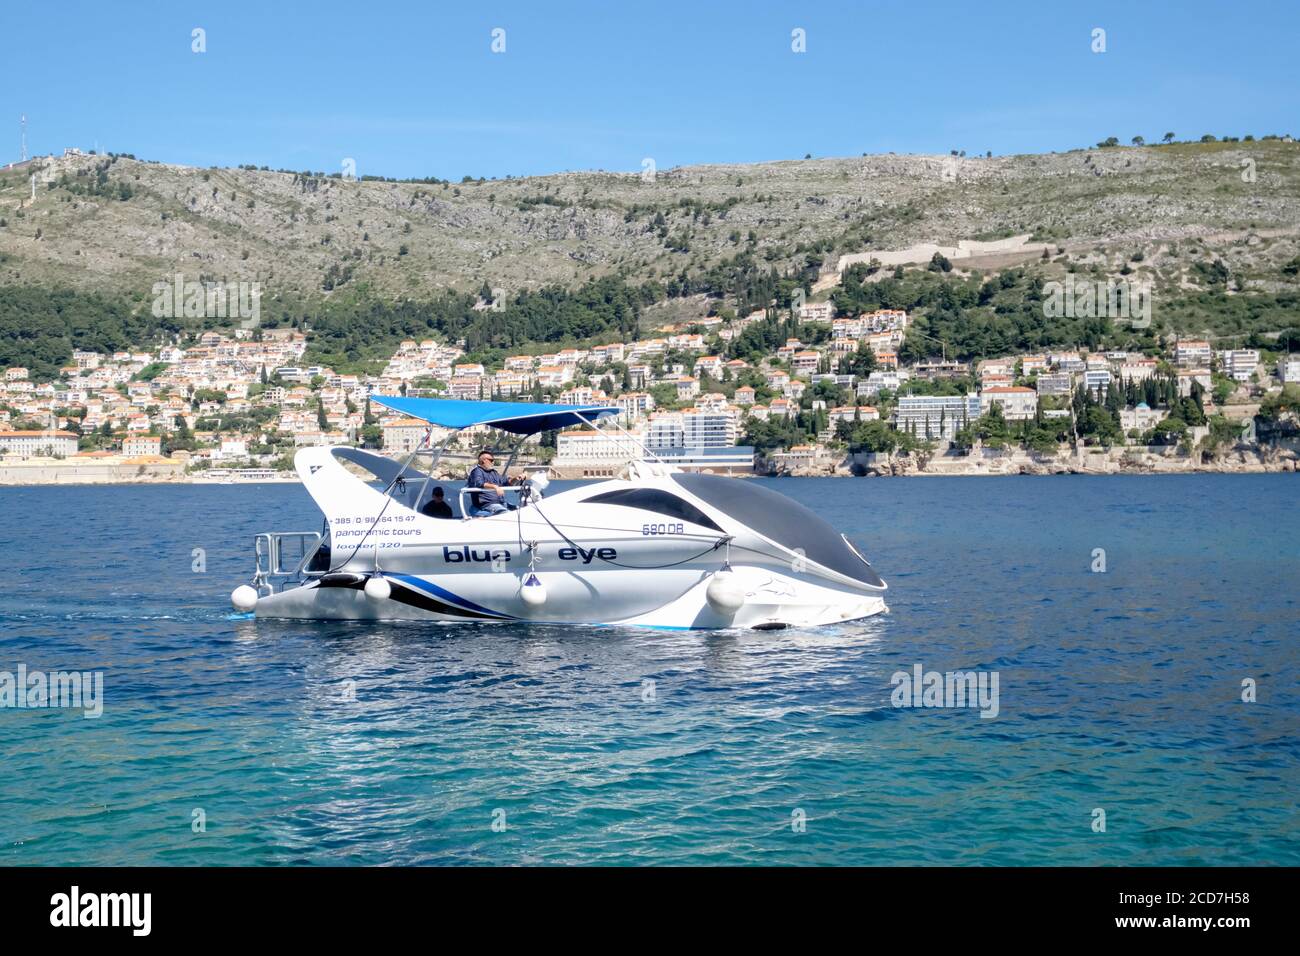 Das Glasbodenboot, das Blaue Auge, nimmt Touristen mit auf eine Bootsfahrt in der Nähe von Dubrovnik, Kroatien Stockfoto